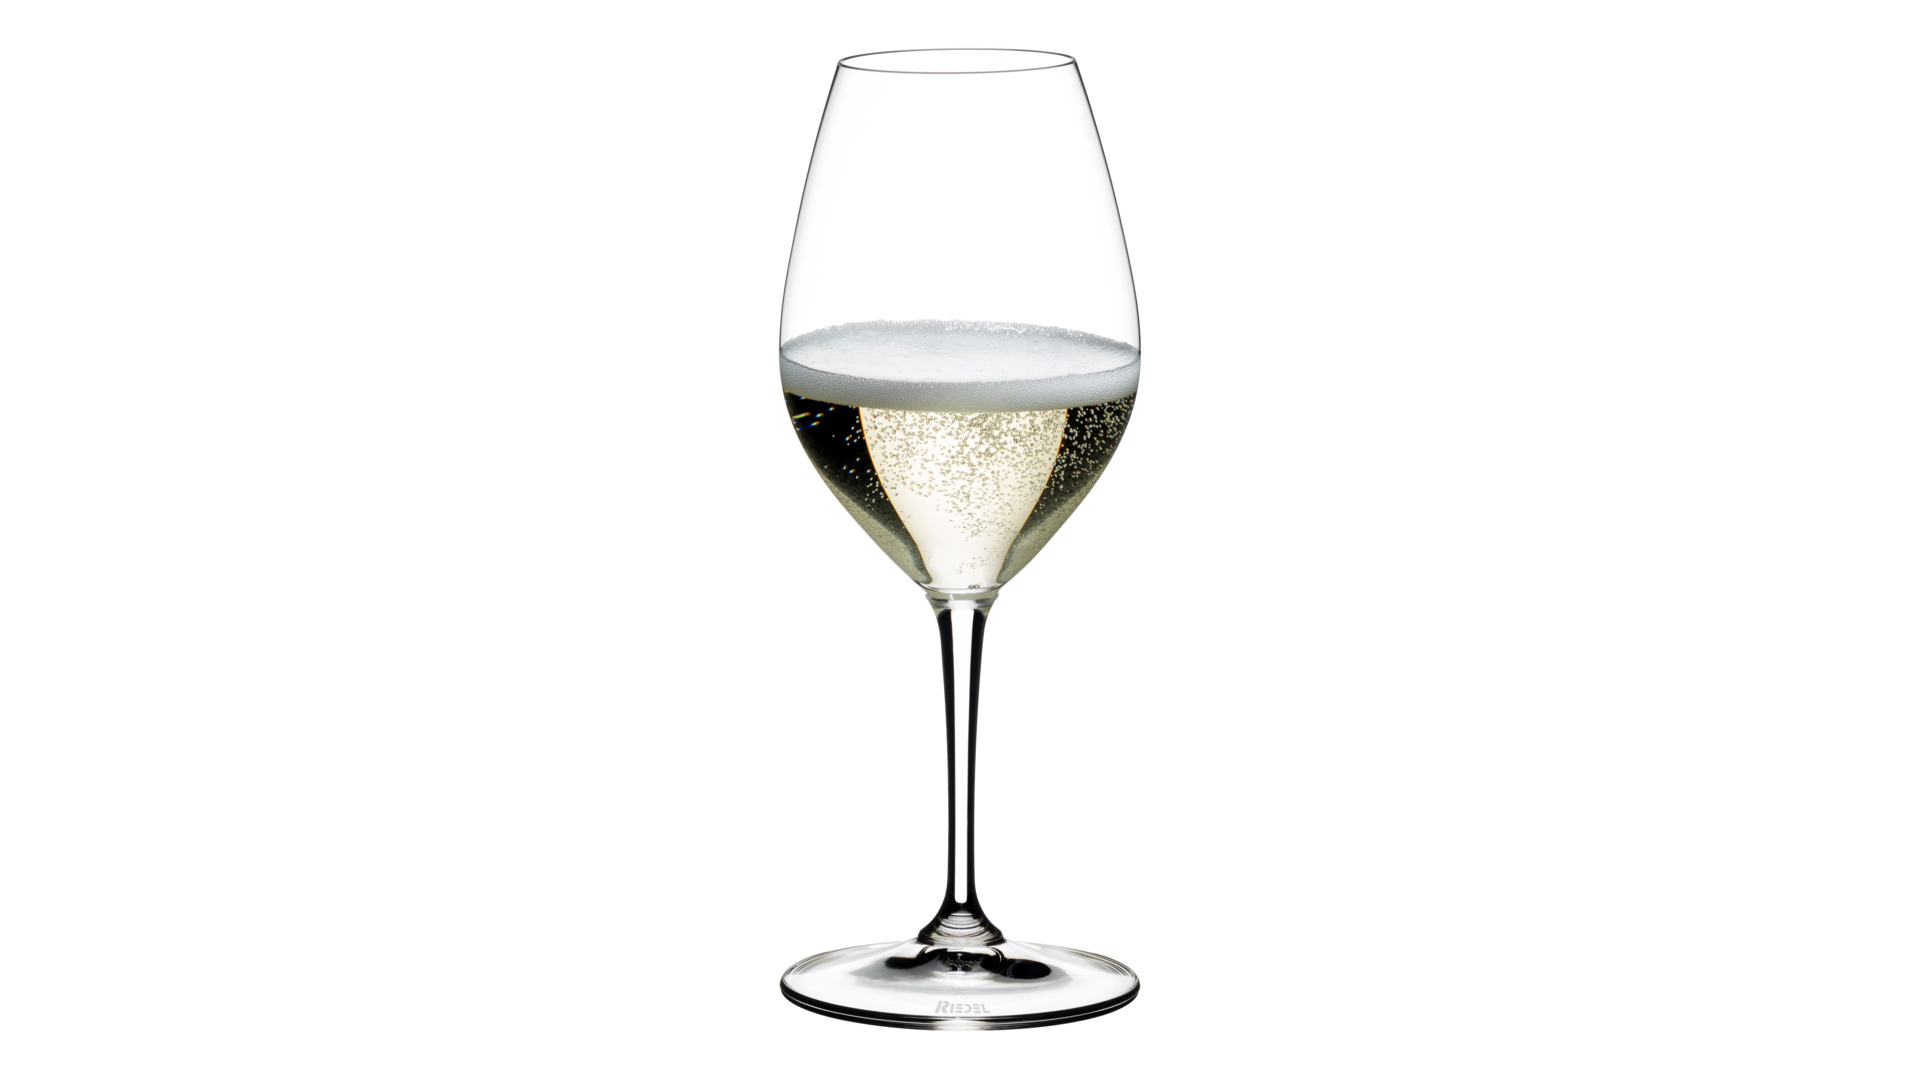 Набор бокалов для шампанского Riedel Vinum 445 мл, 2 шт, хрусталь бессвинцовый